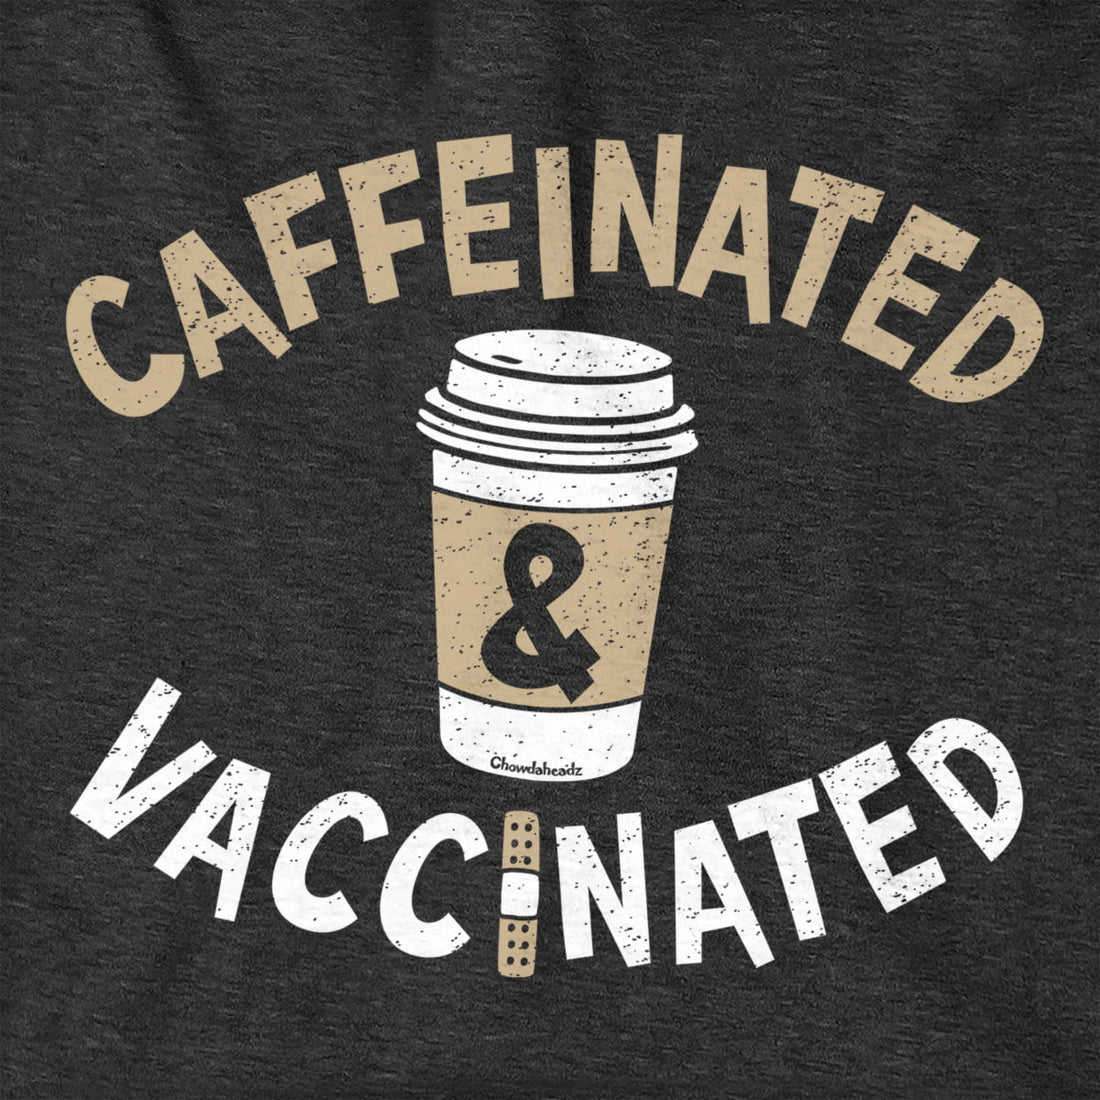 Caffeinated & Vaccinated Hoodie - Chowdaheadz